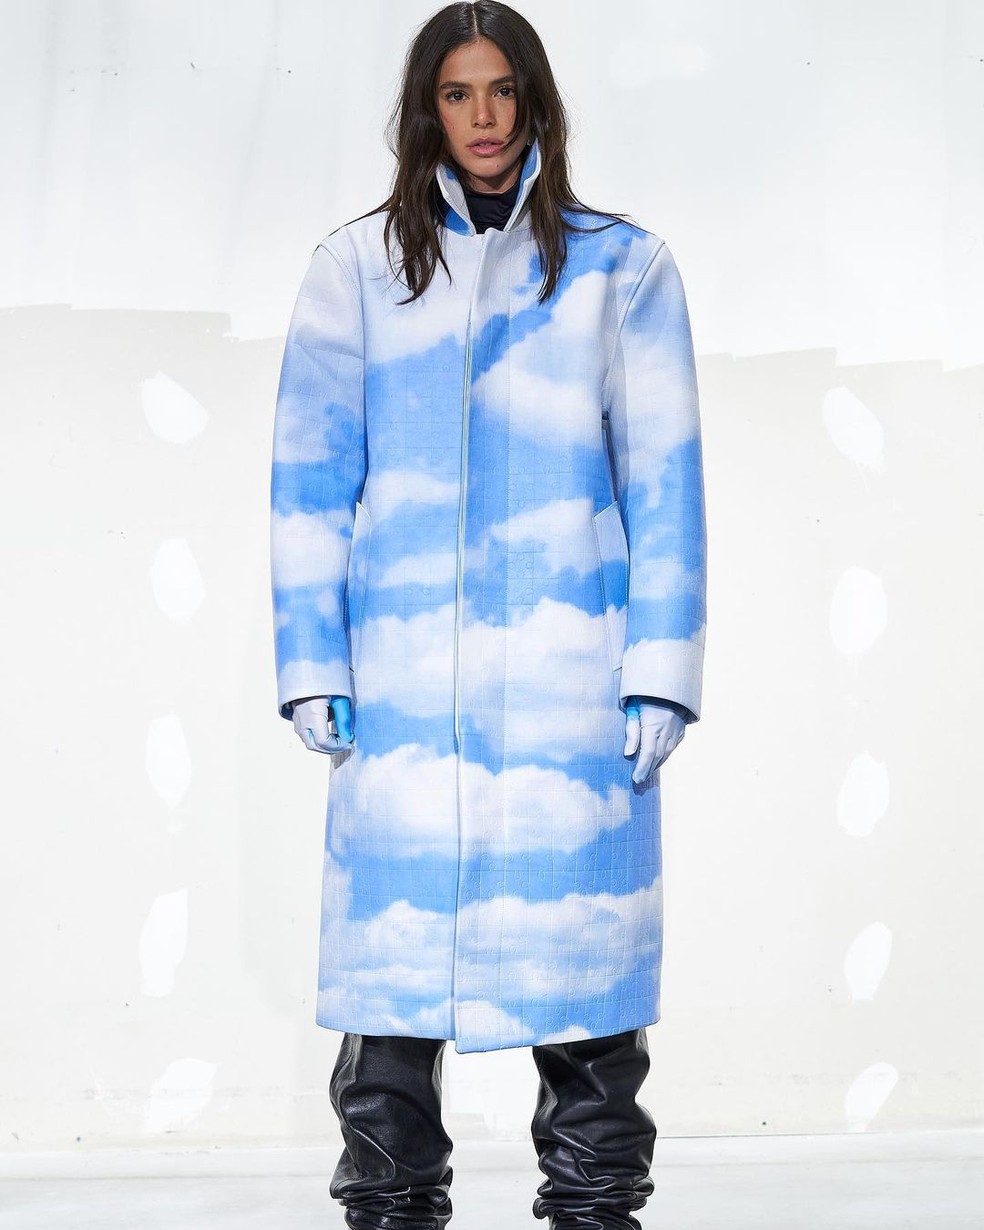 Seria um sonho? Bruna usou casacão de estampa nuvem — Foto: Reprodução Instagram